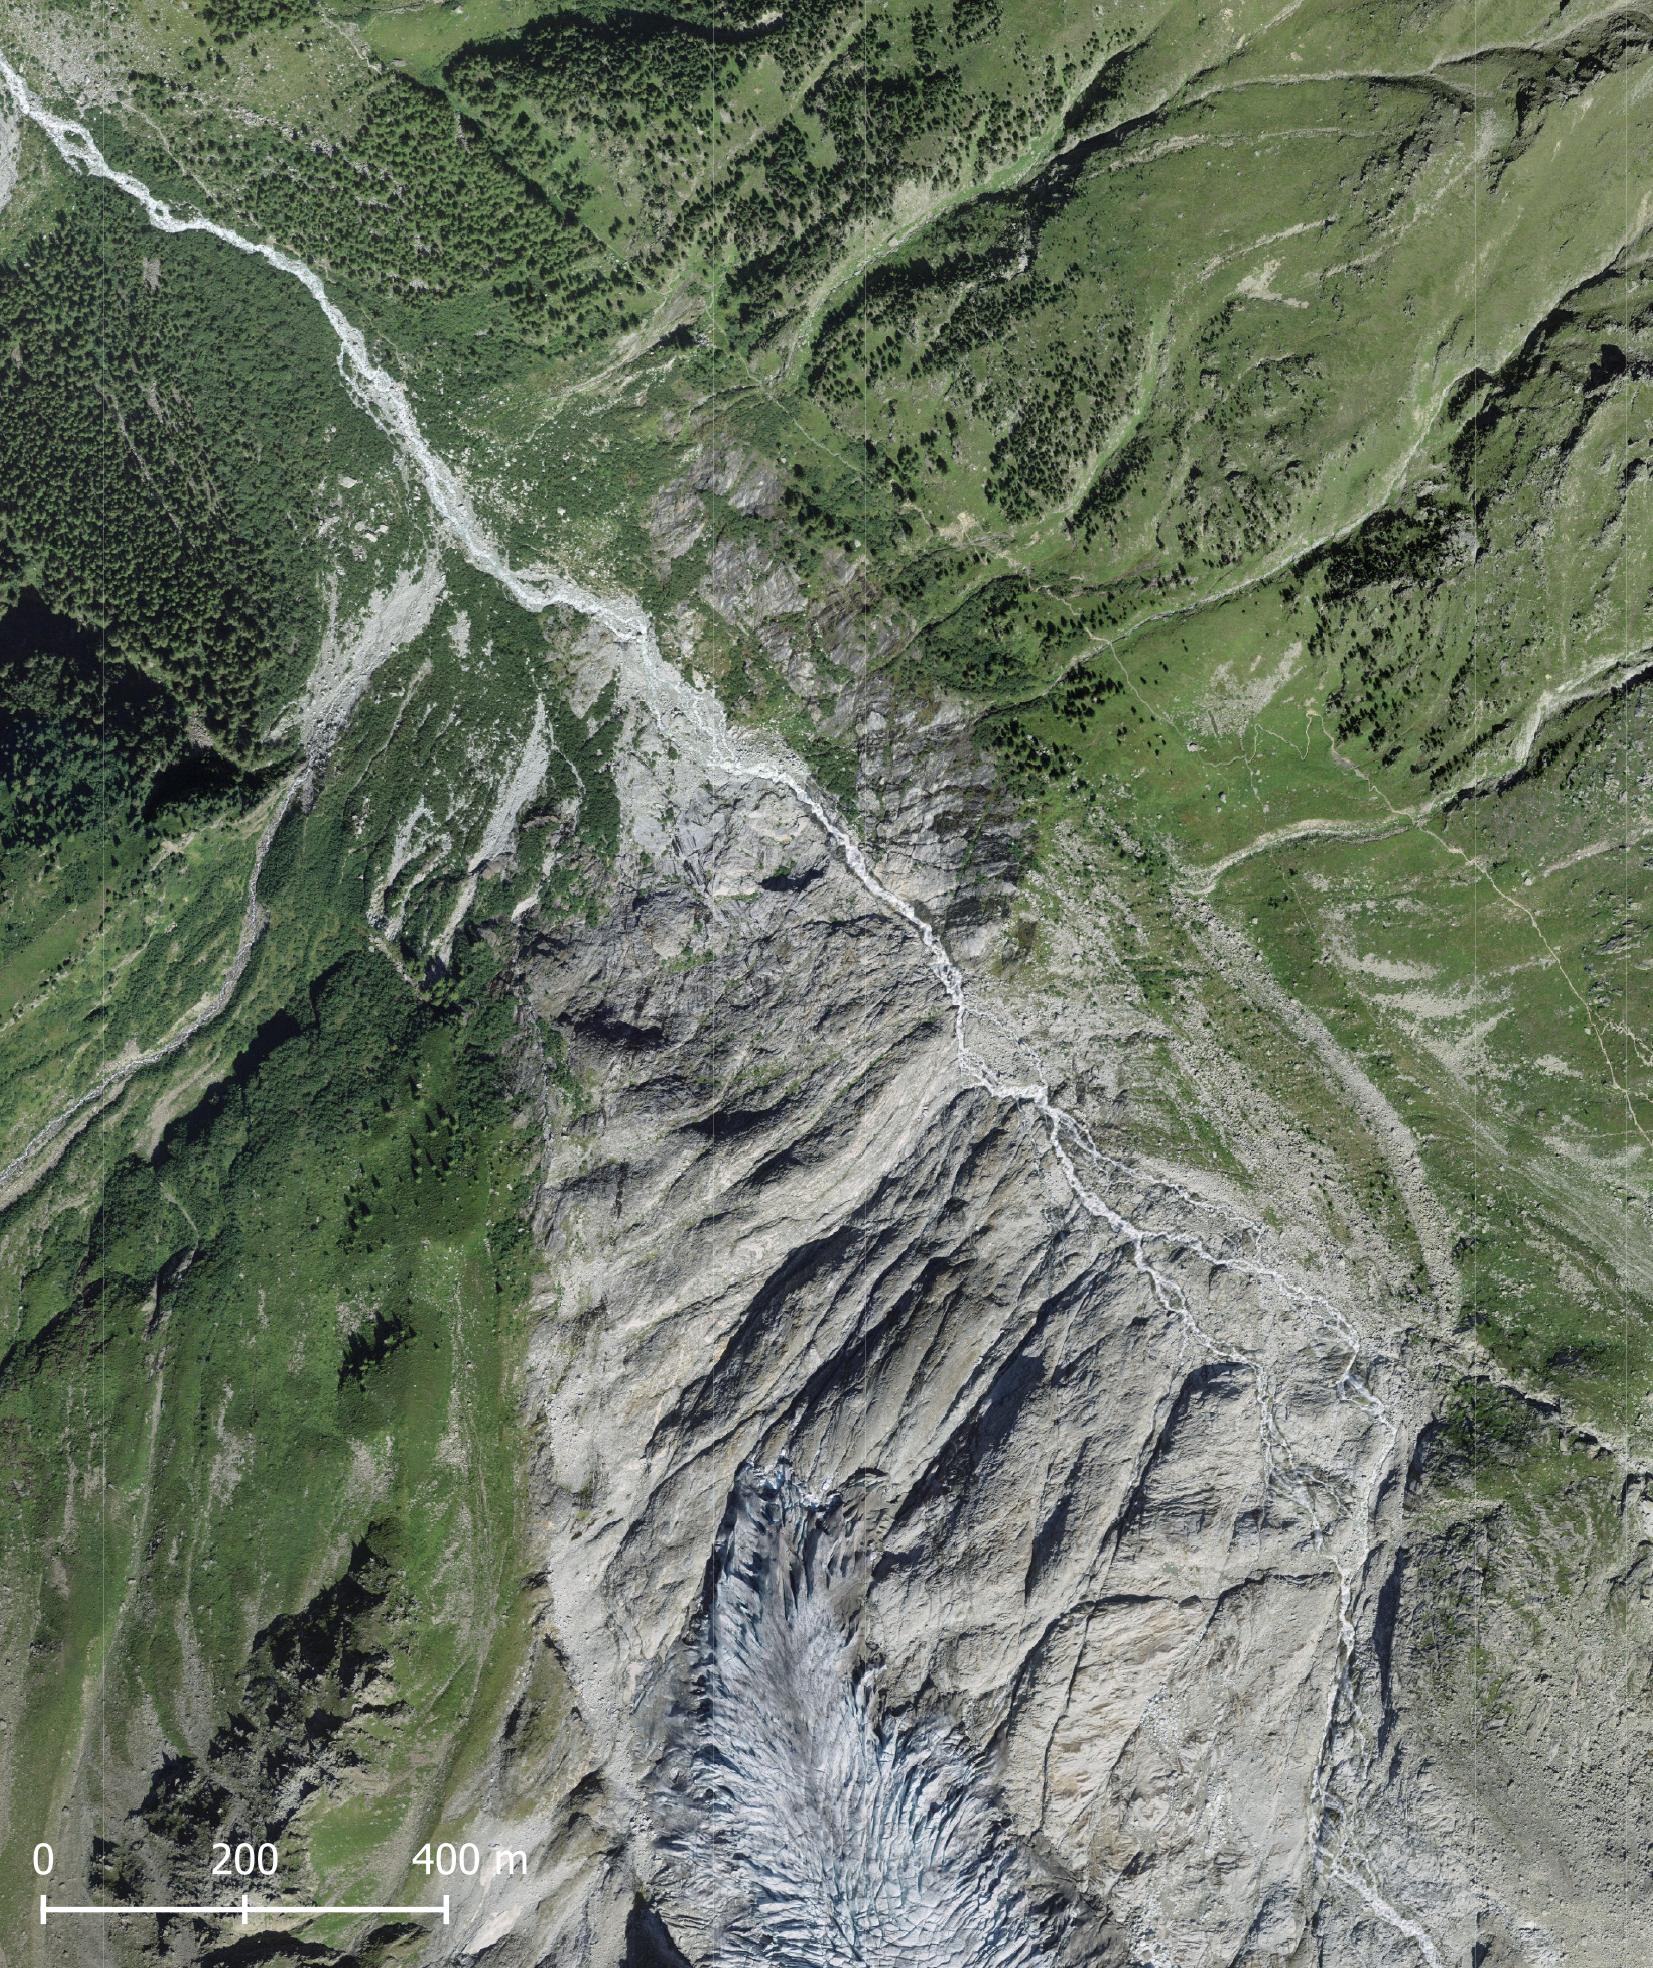 Glacier du Trient in 2020. Bron: siwsstopo Zeitreise.